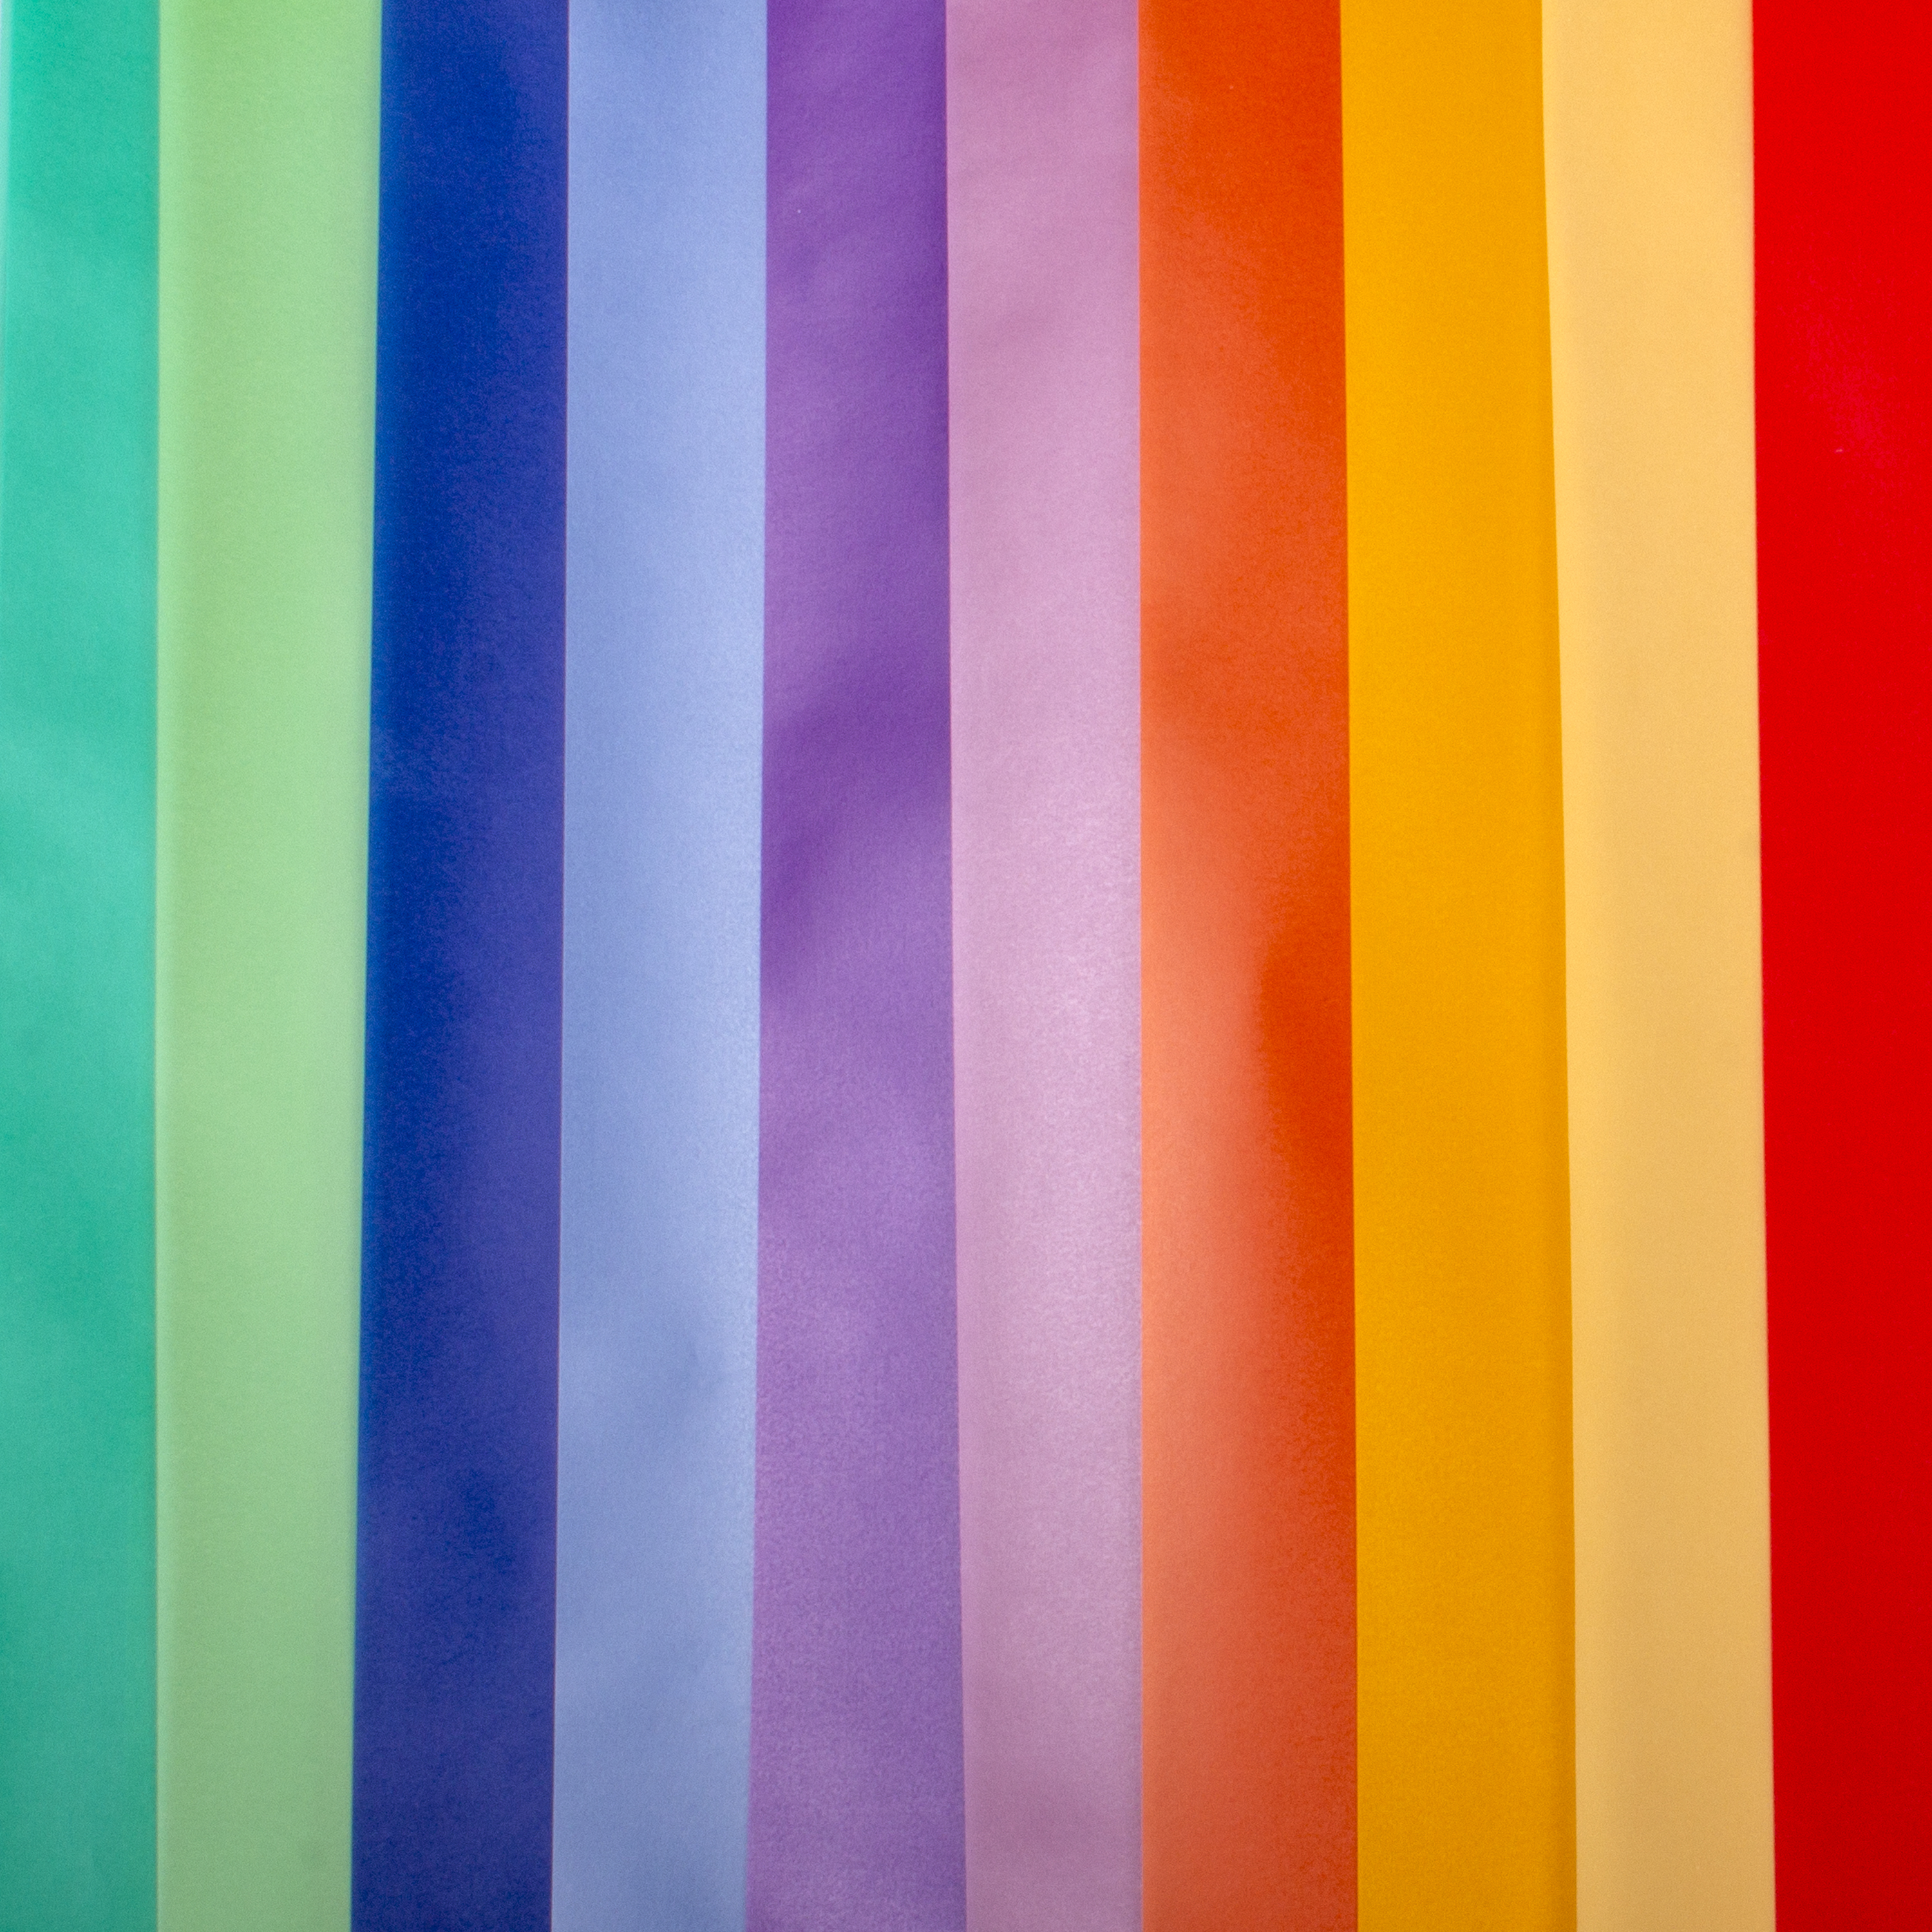 Transparentpapier stark farbig sortiert, 115 g/m²